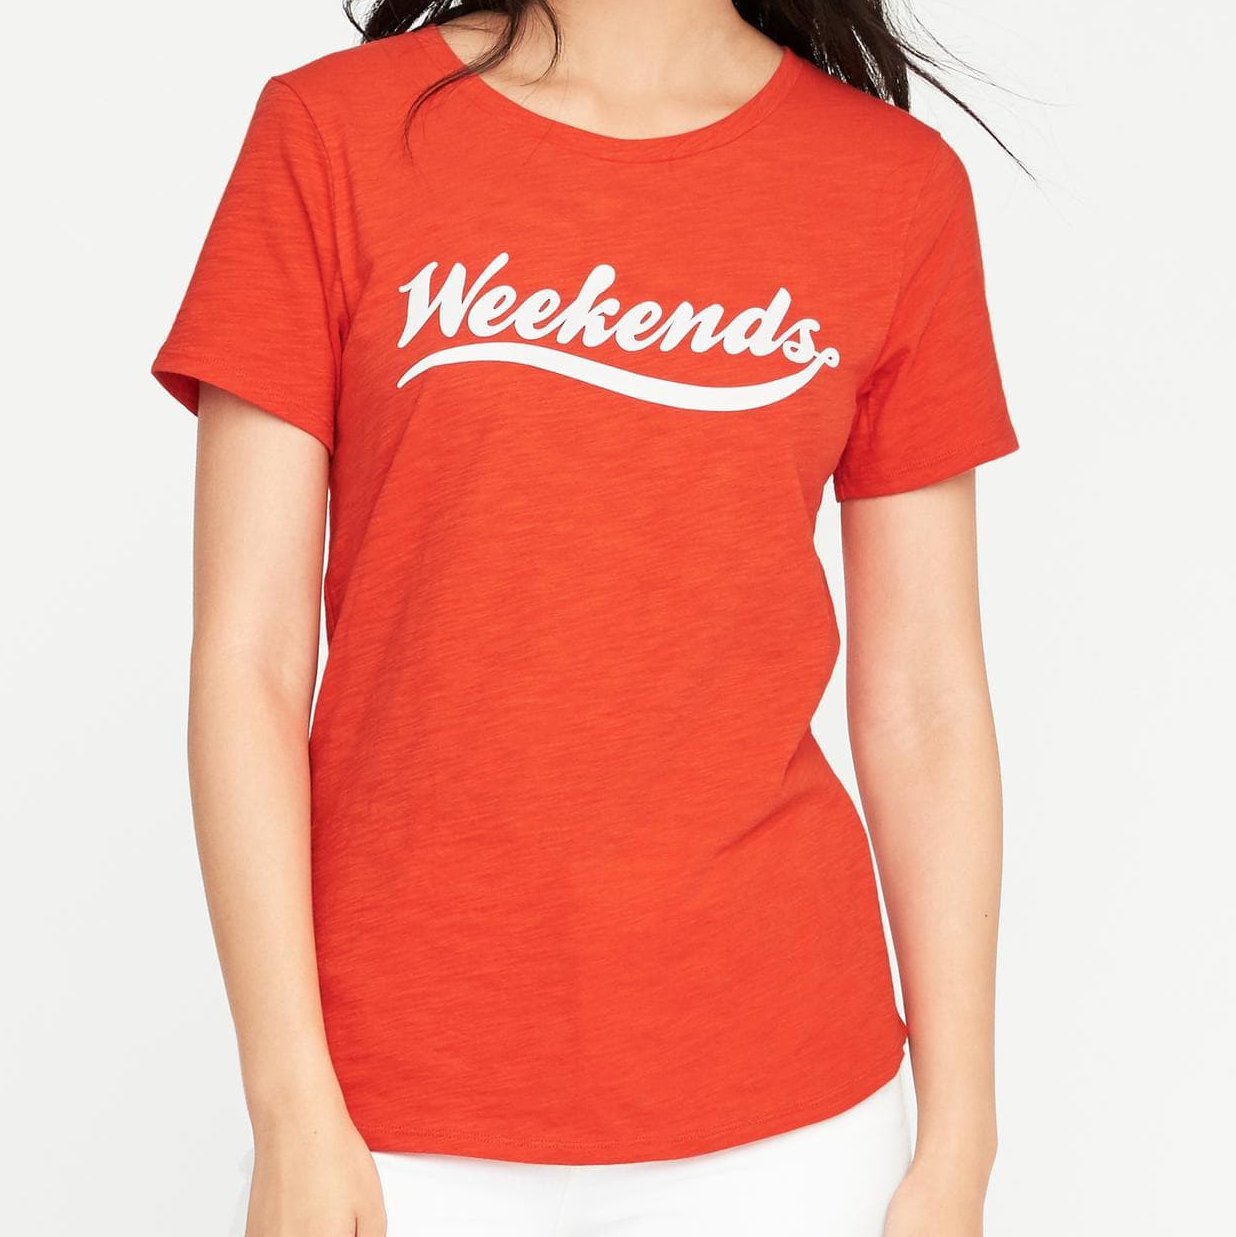 Weekends Shirt